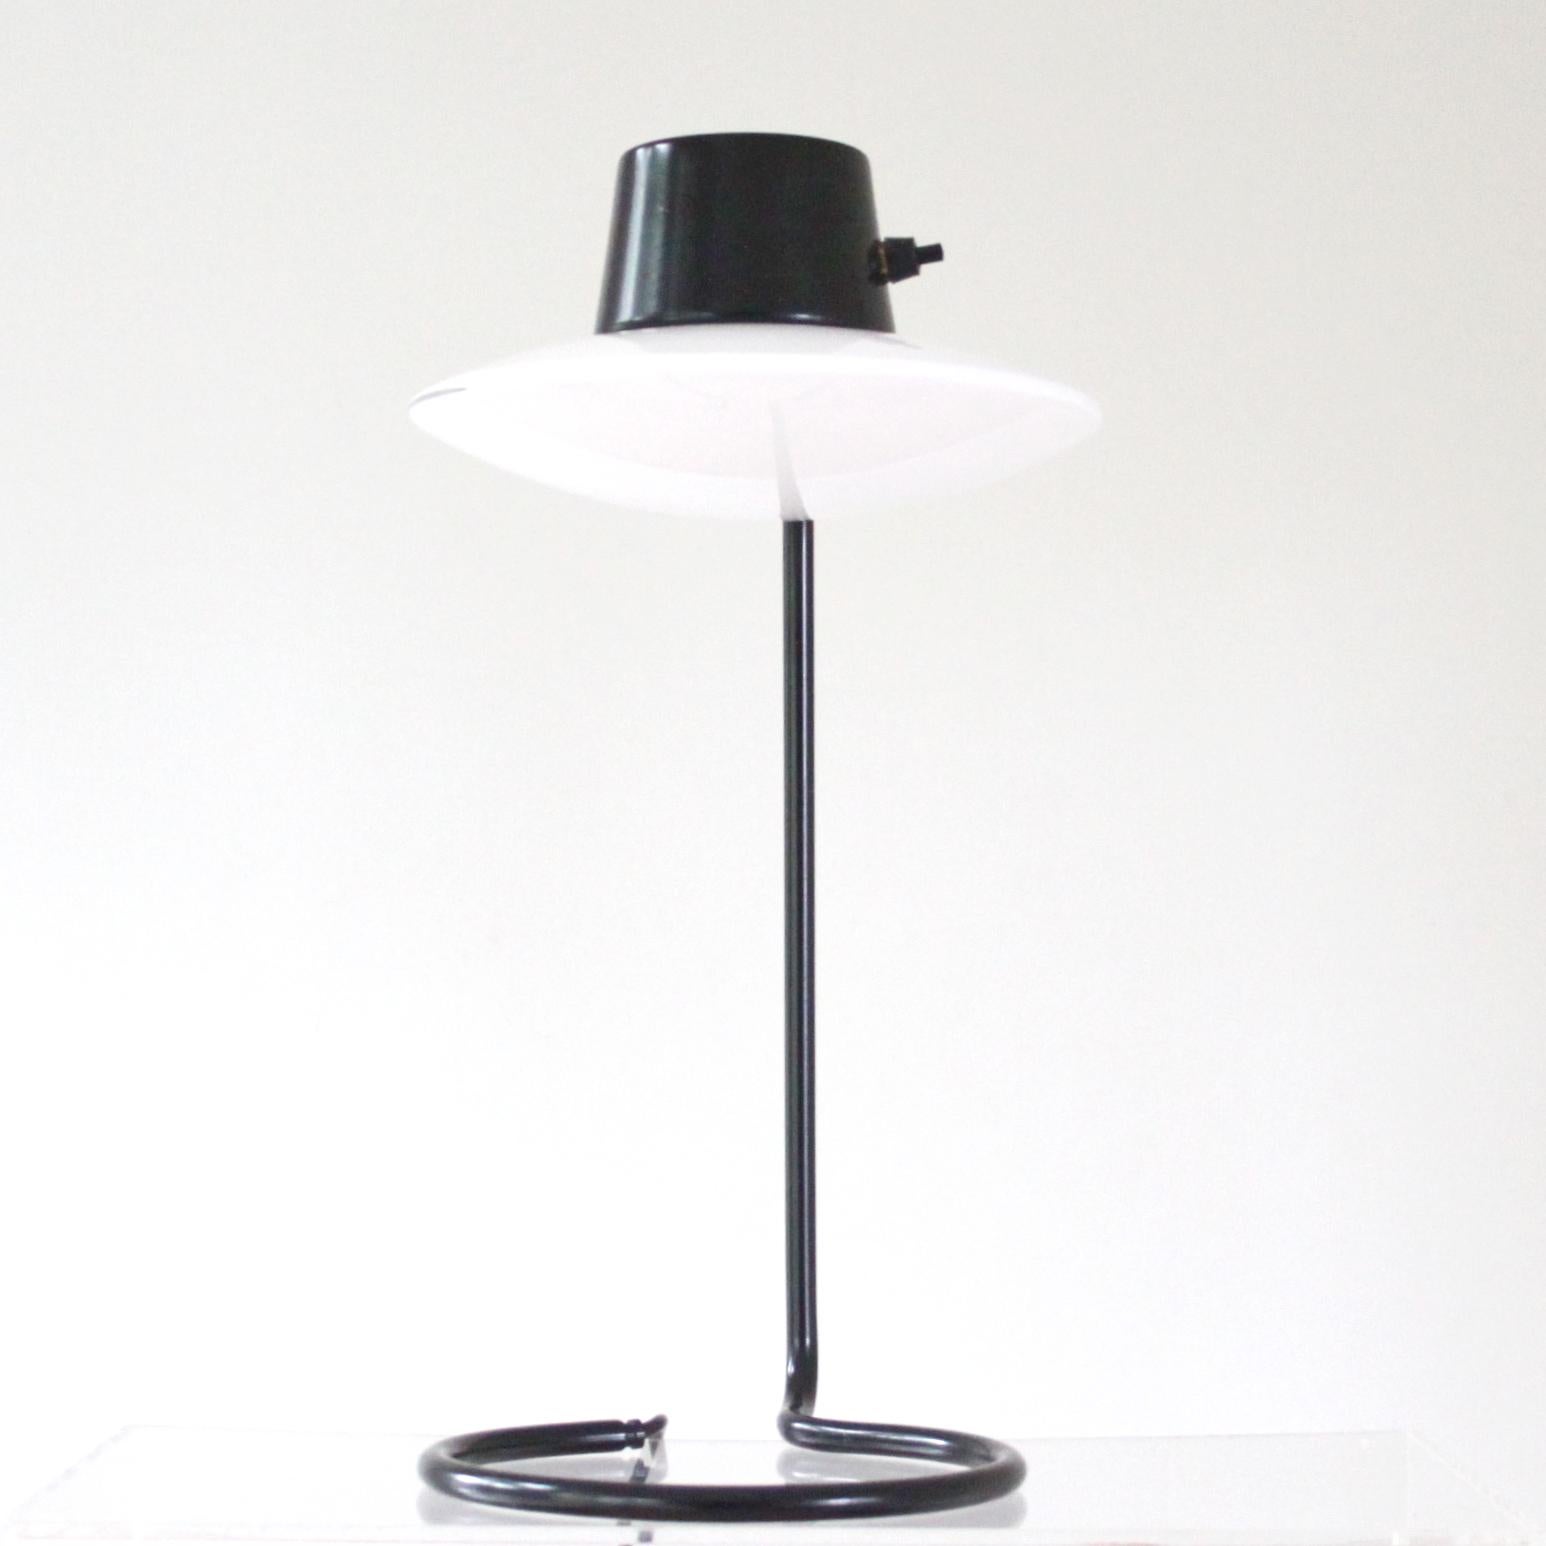 ARNE JACOBSEN & LOUIS POULSEN

THE SCANDINAVIAN MODERN

Magnifique lampe de table vintage Arne Jacobsen Saint Catherine. 

Cette lampe est également appelée lampe de table Oxford, modèle haut avec tige en métal noir. Interrupteur Bakelit, abat-jour